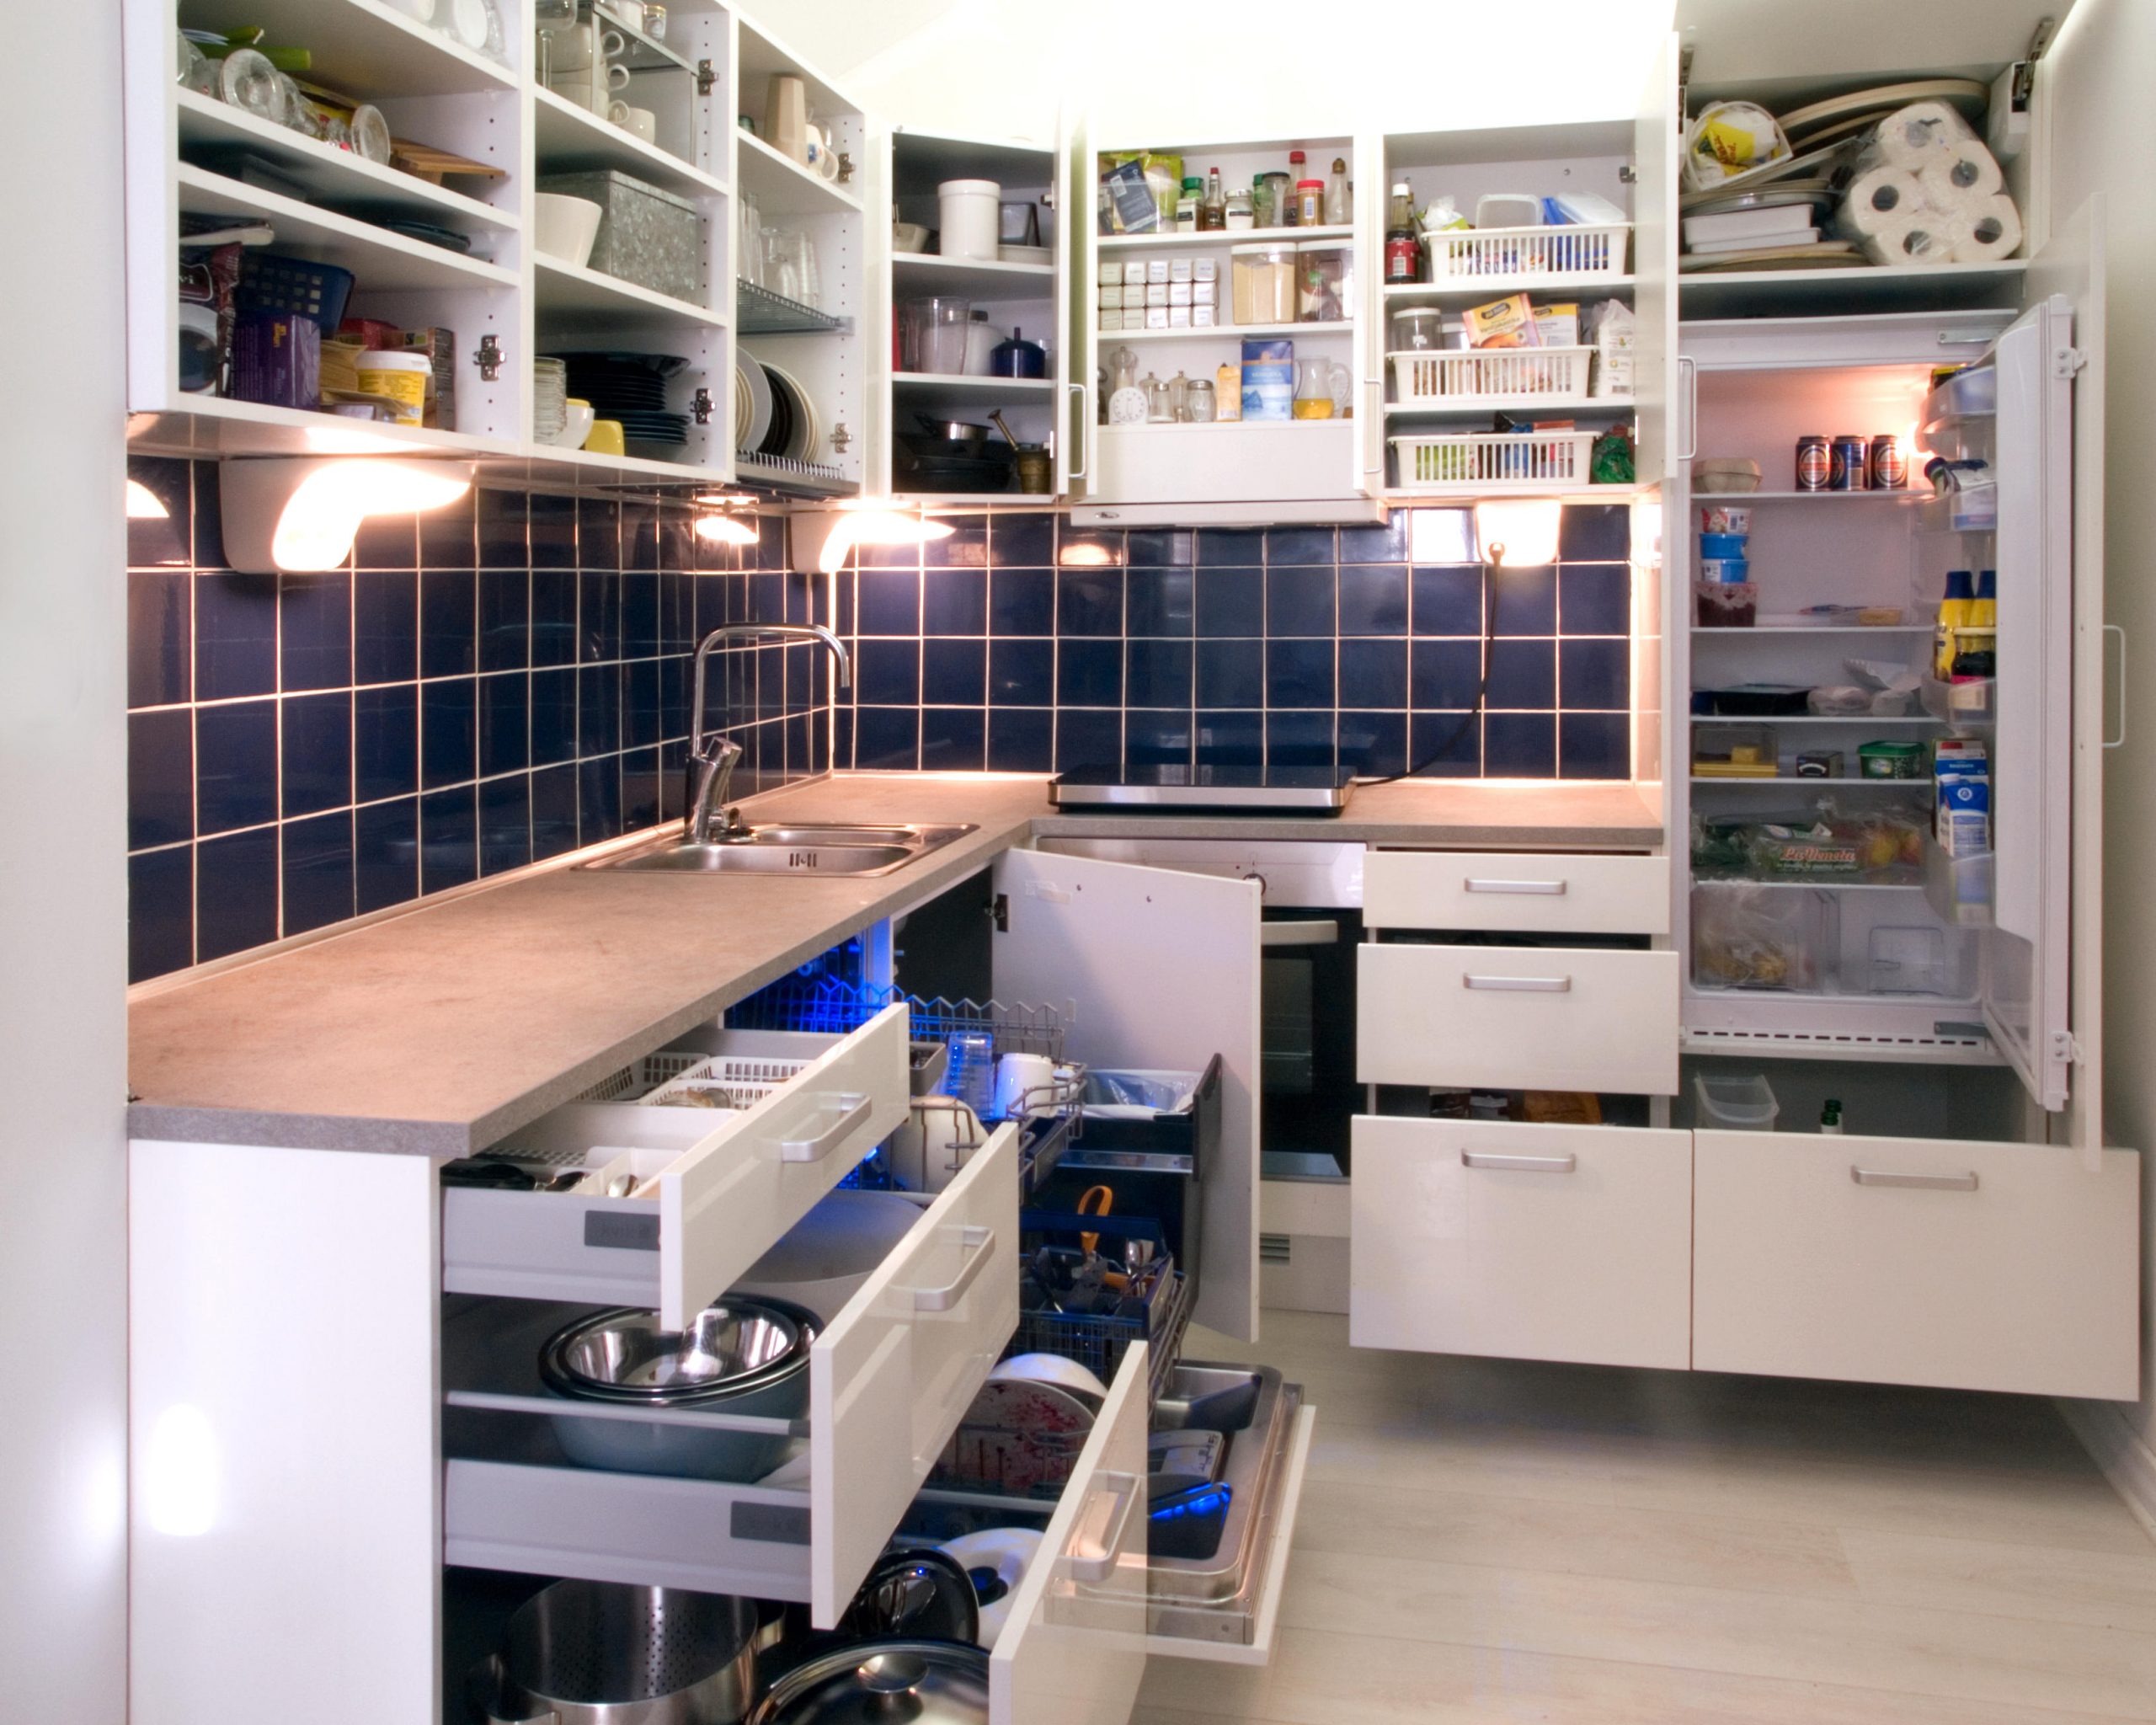 6 Ways to Add Storage Space in Your Kitchen